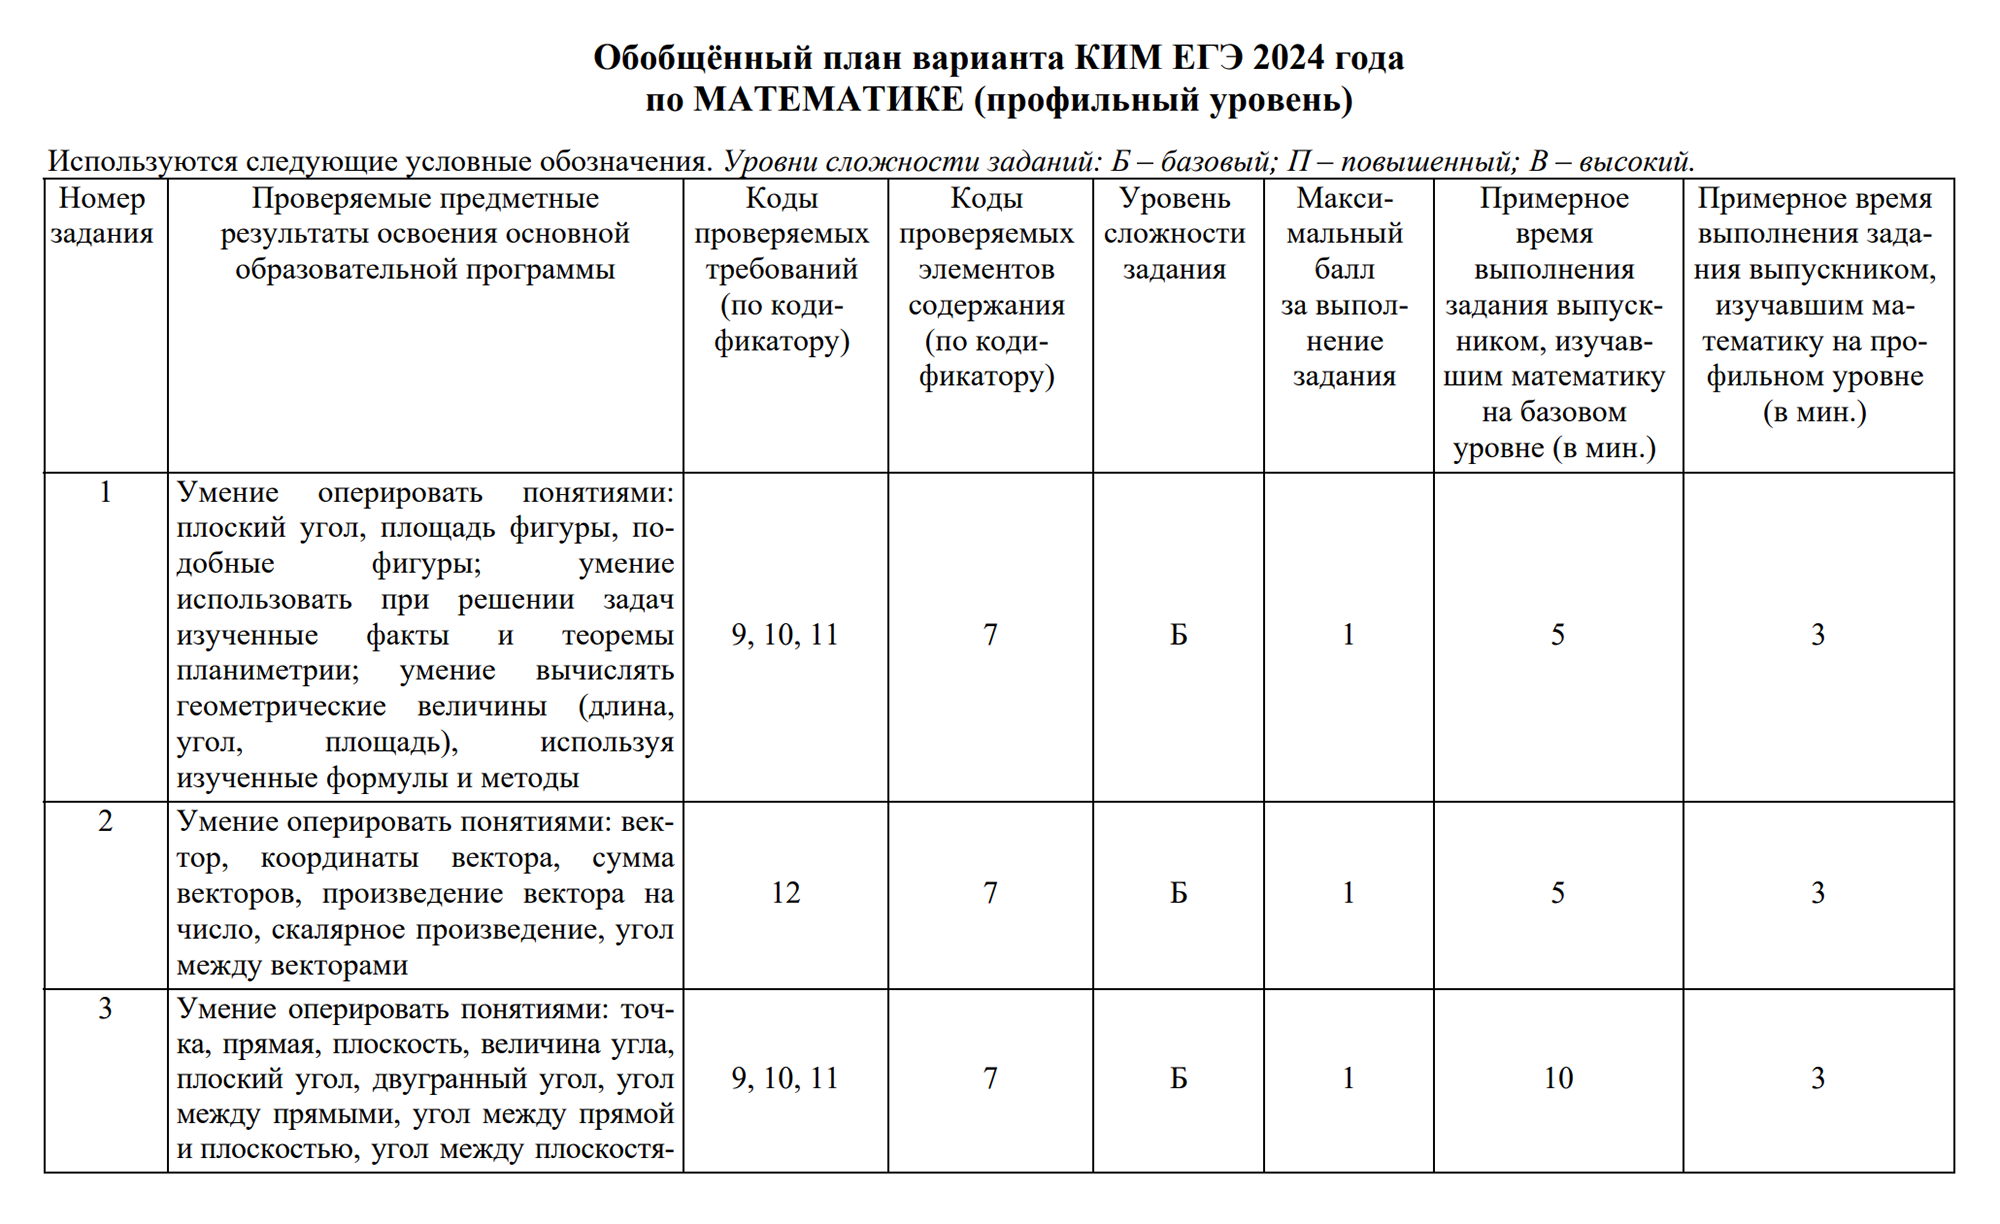 Таблица в спецификации для профильной математики. Источник: fipi.ru